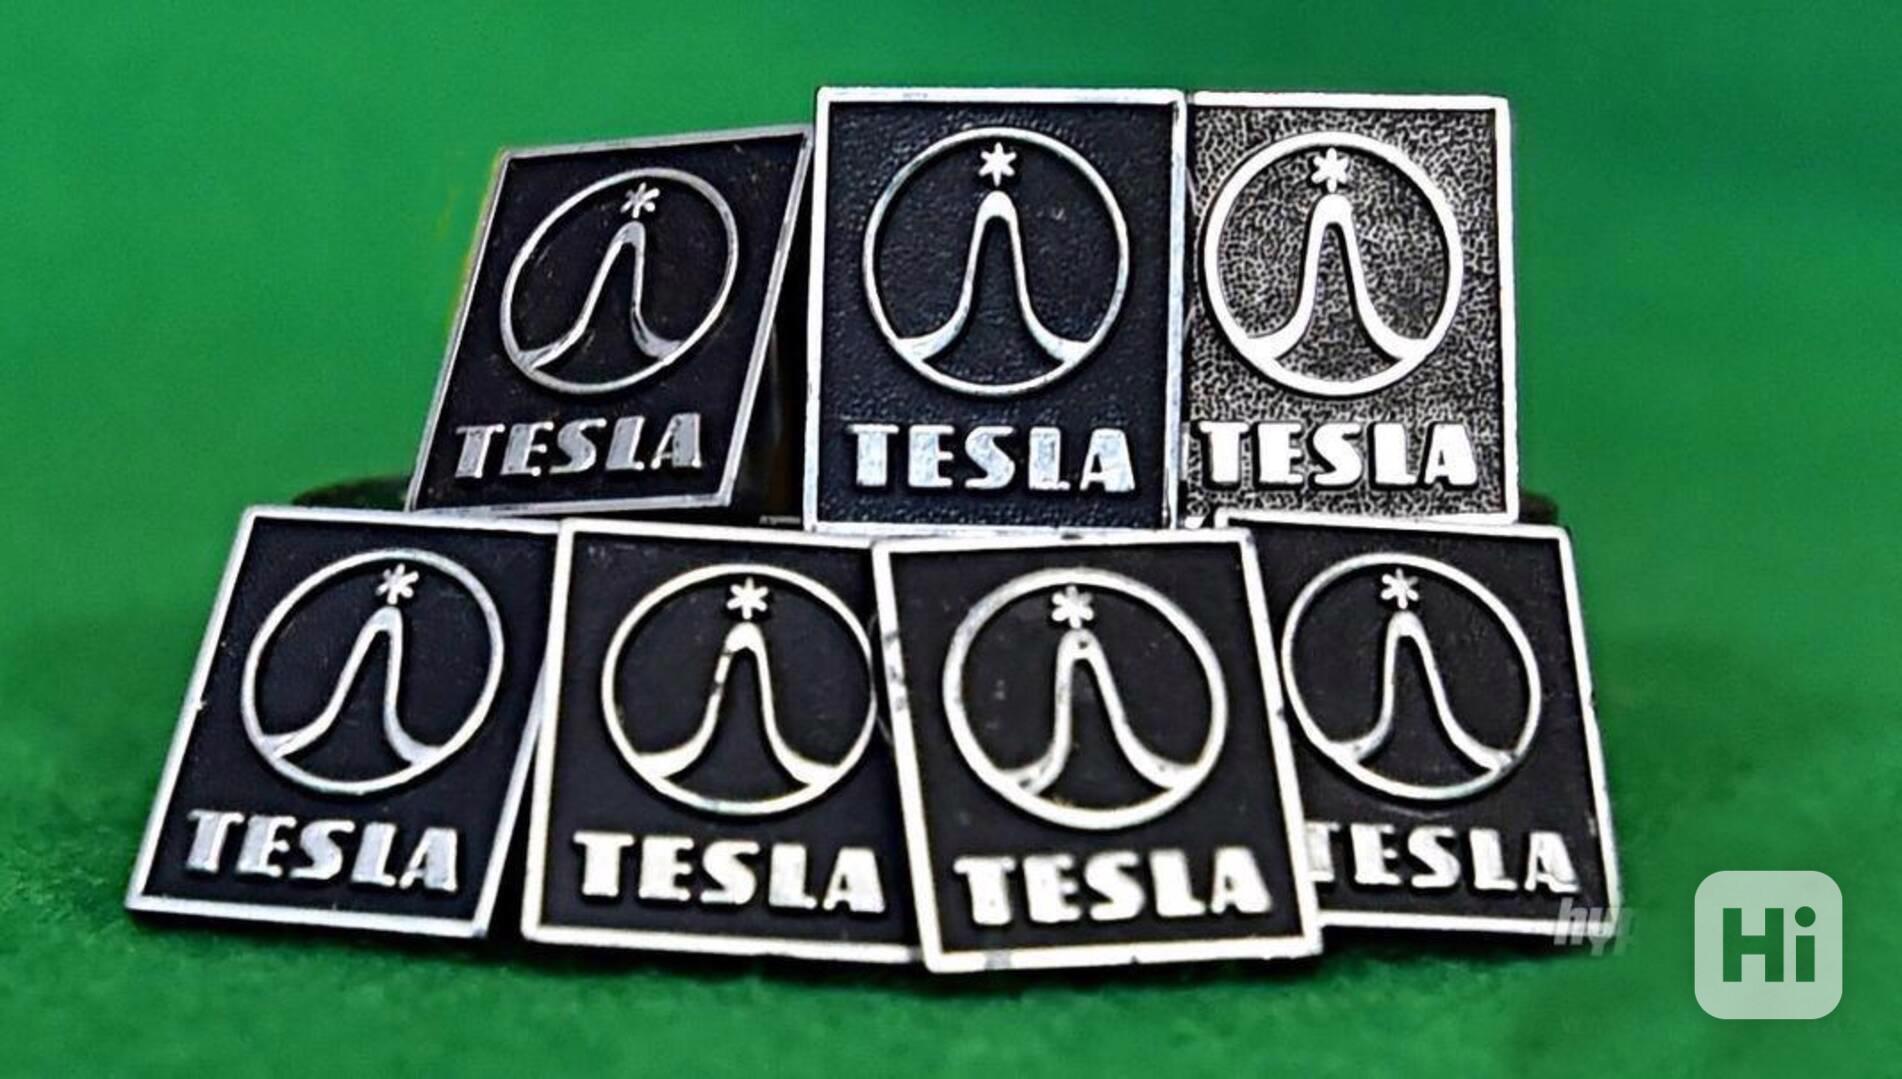 Odznaky z reprosoustav TESLA - Tesla ARS 1014, 1034, 1054... - foto 1